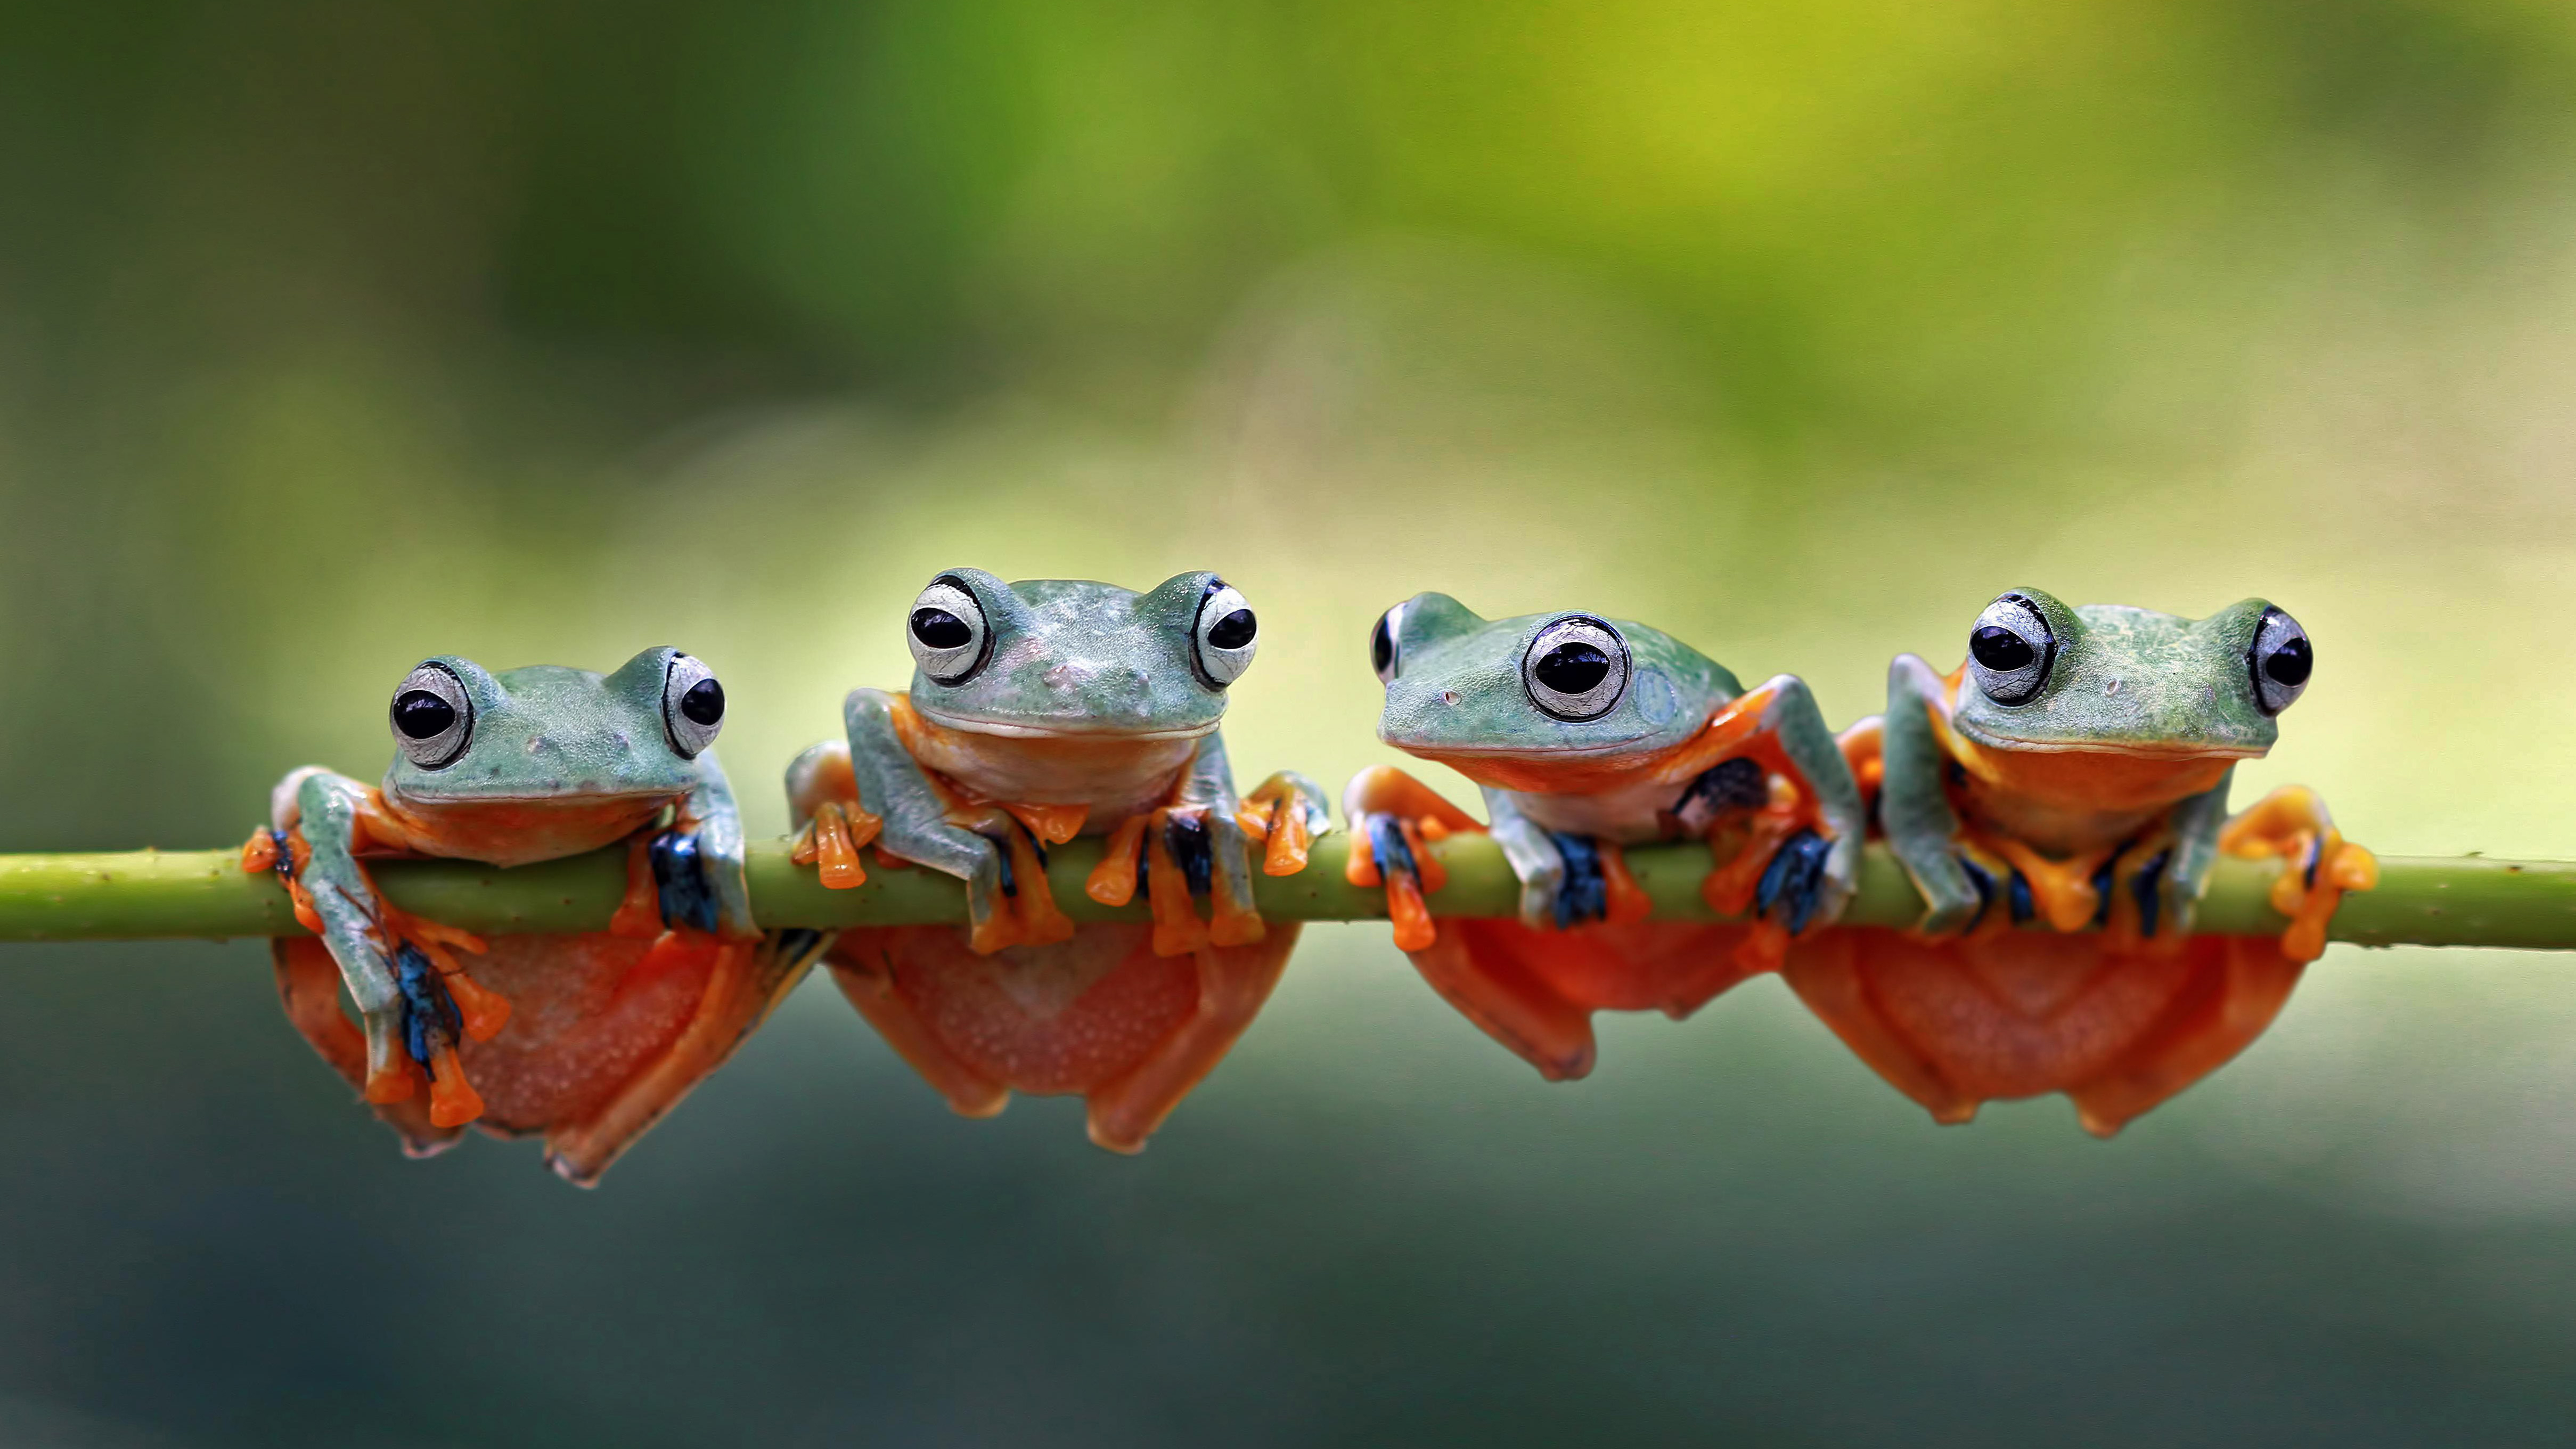 四只爪哇树蛙趴在树茎上，印度尼西亚 (© SnapRapid/Offset by Shutterstock)